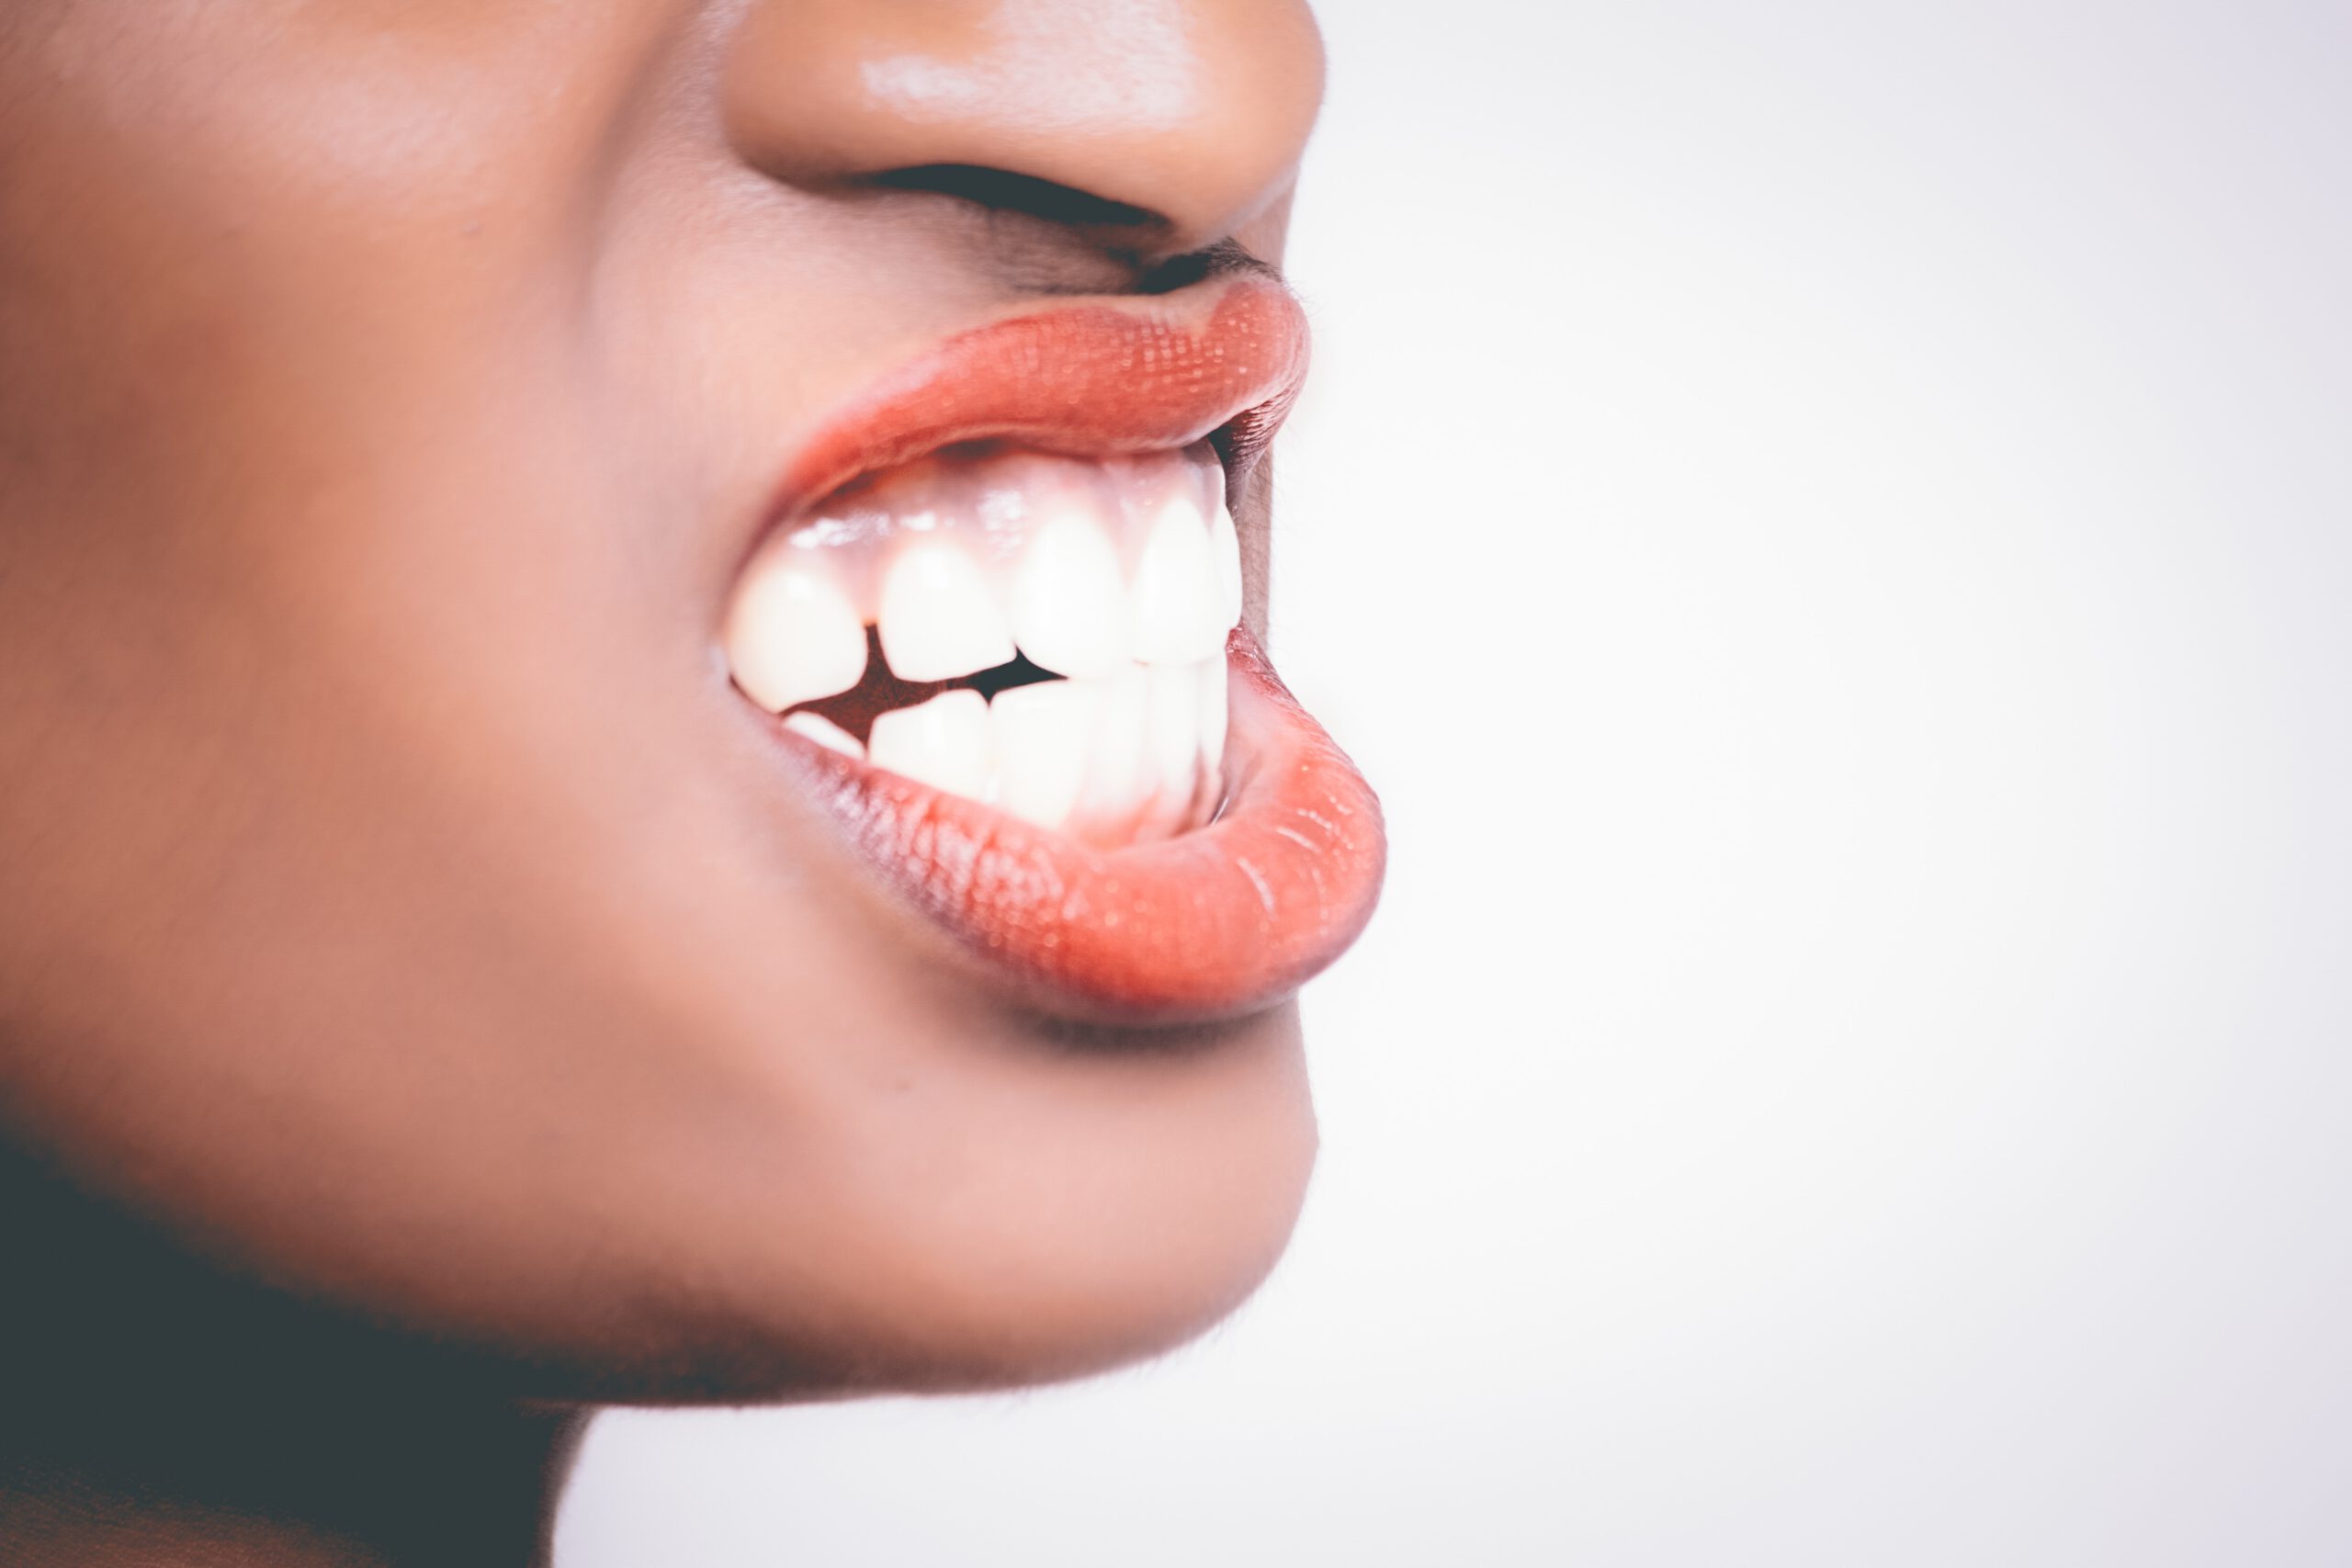 Zagryzanie zębo,w to jeden z objawów bruksizmu